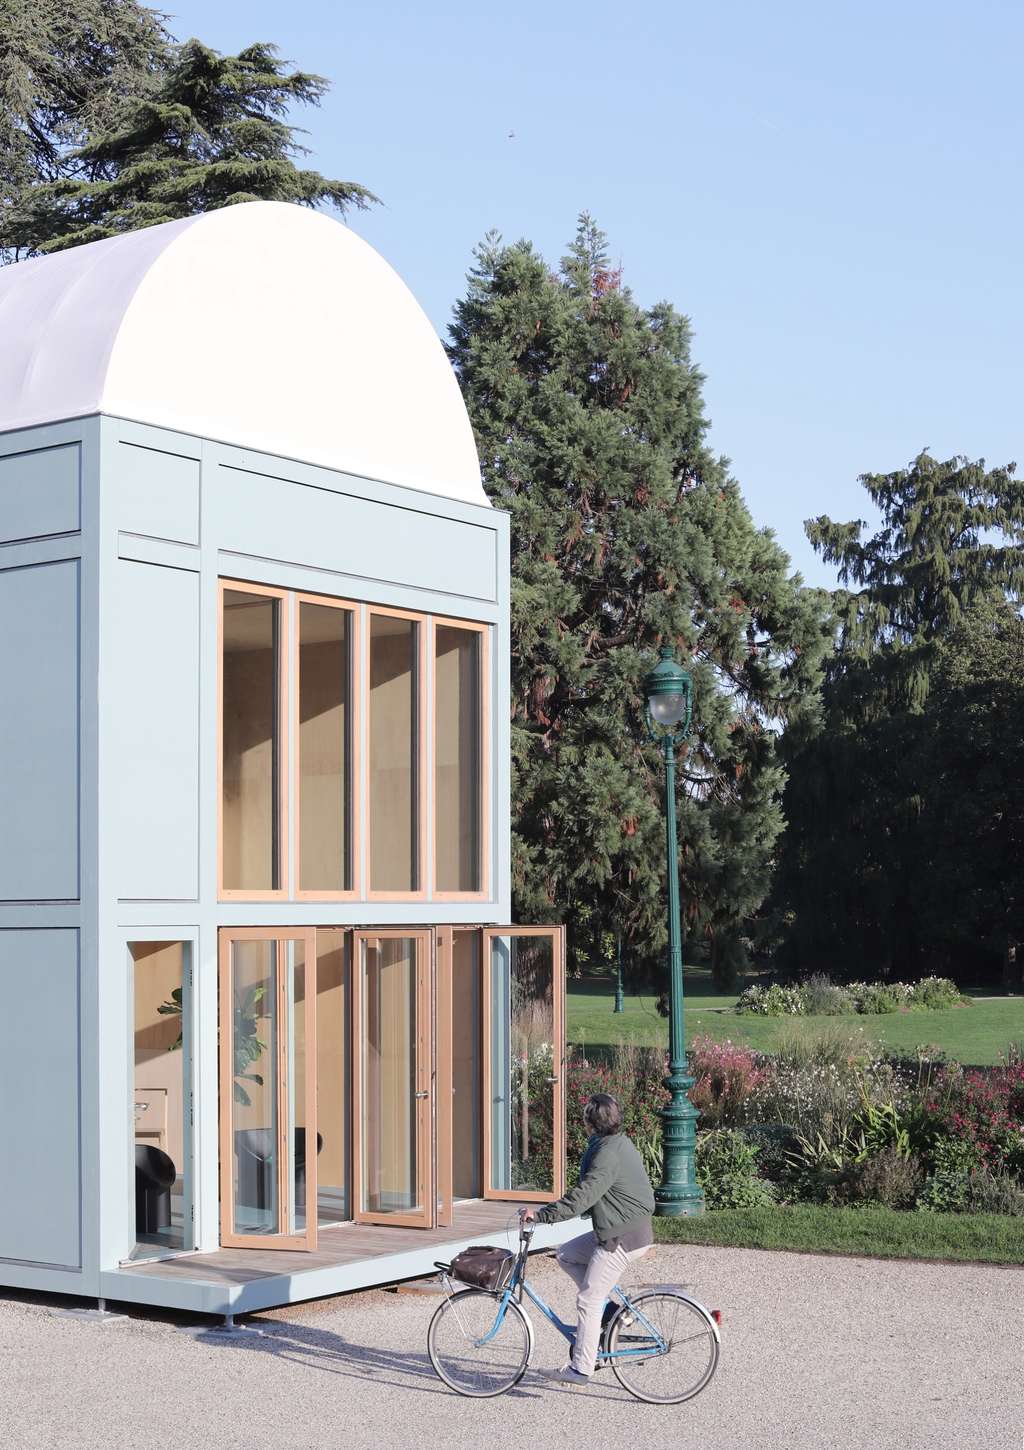  Le prototype du proto-habitat dans un jardin public de Bordeaux, en 2020. © Flavien Menu et Frédérique Barchelard, Wald.city